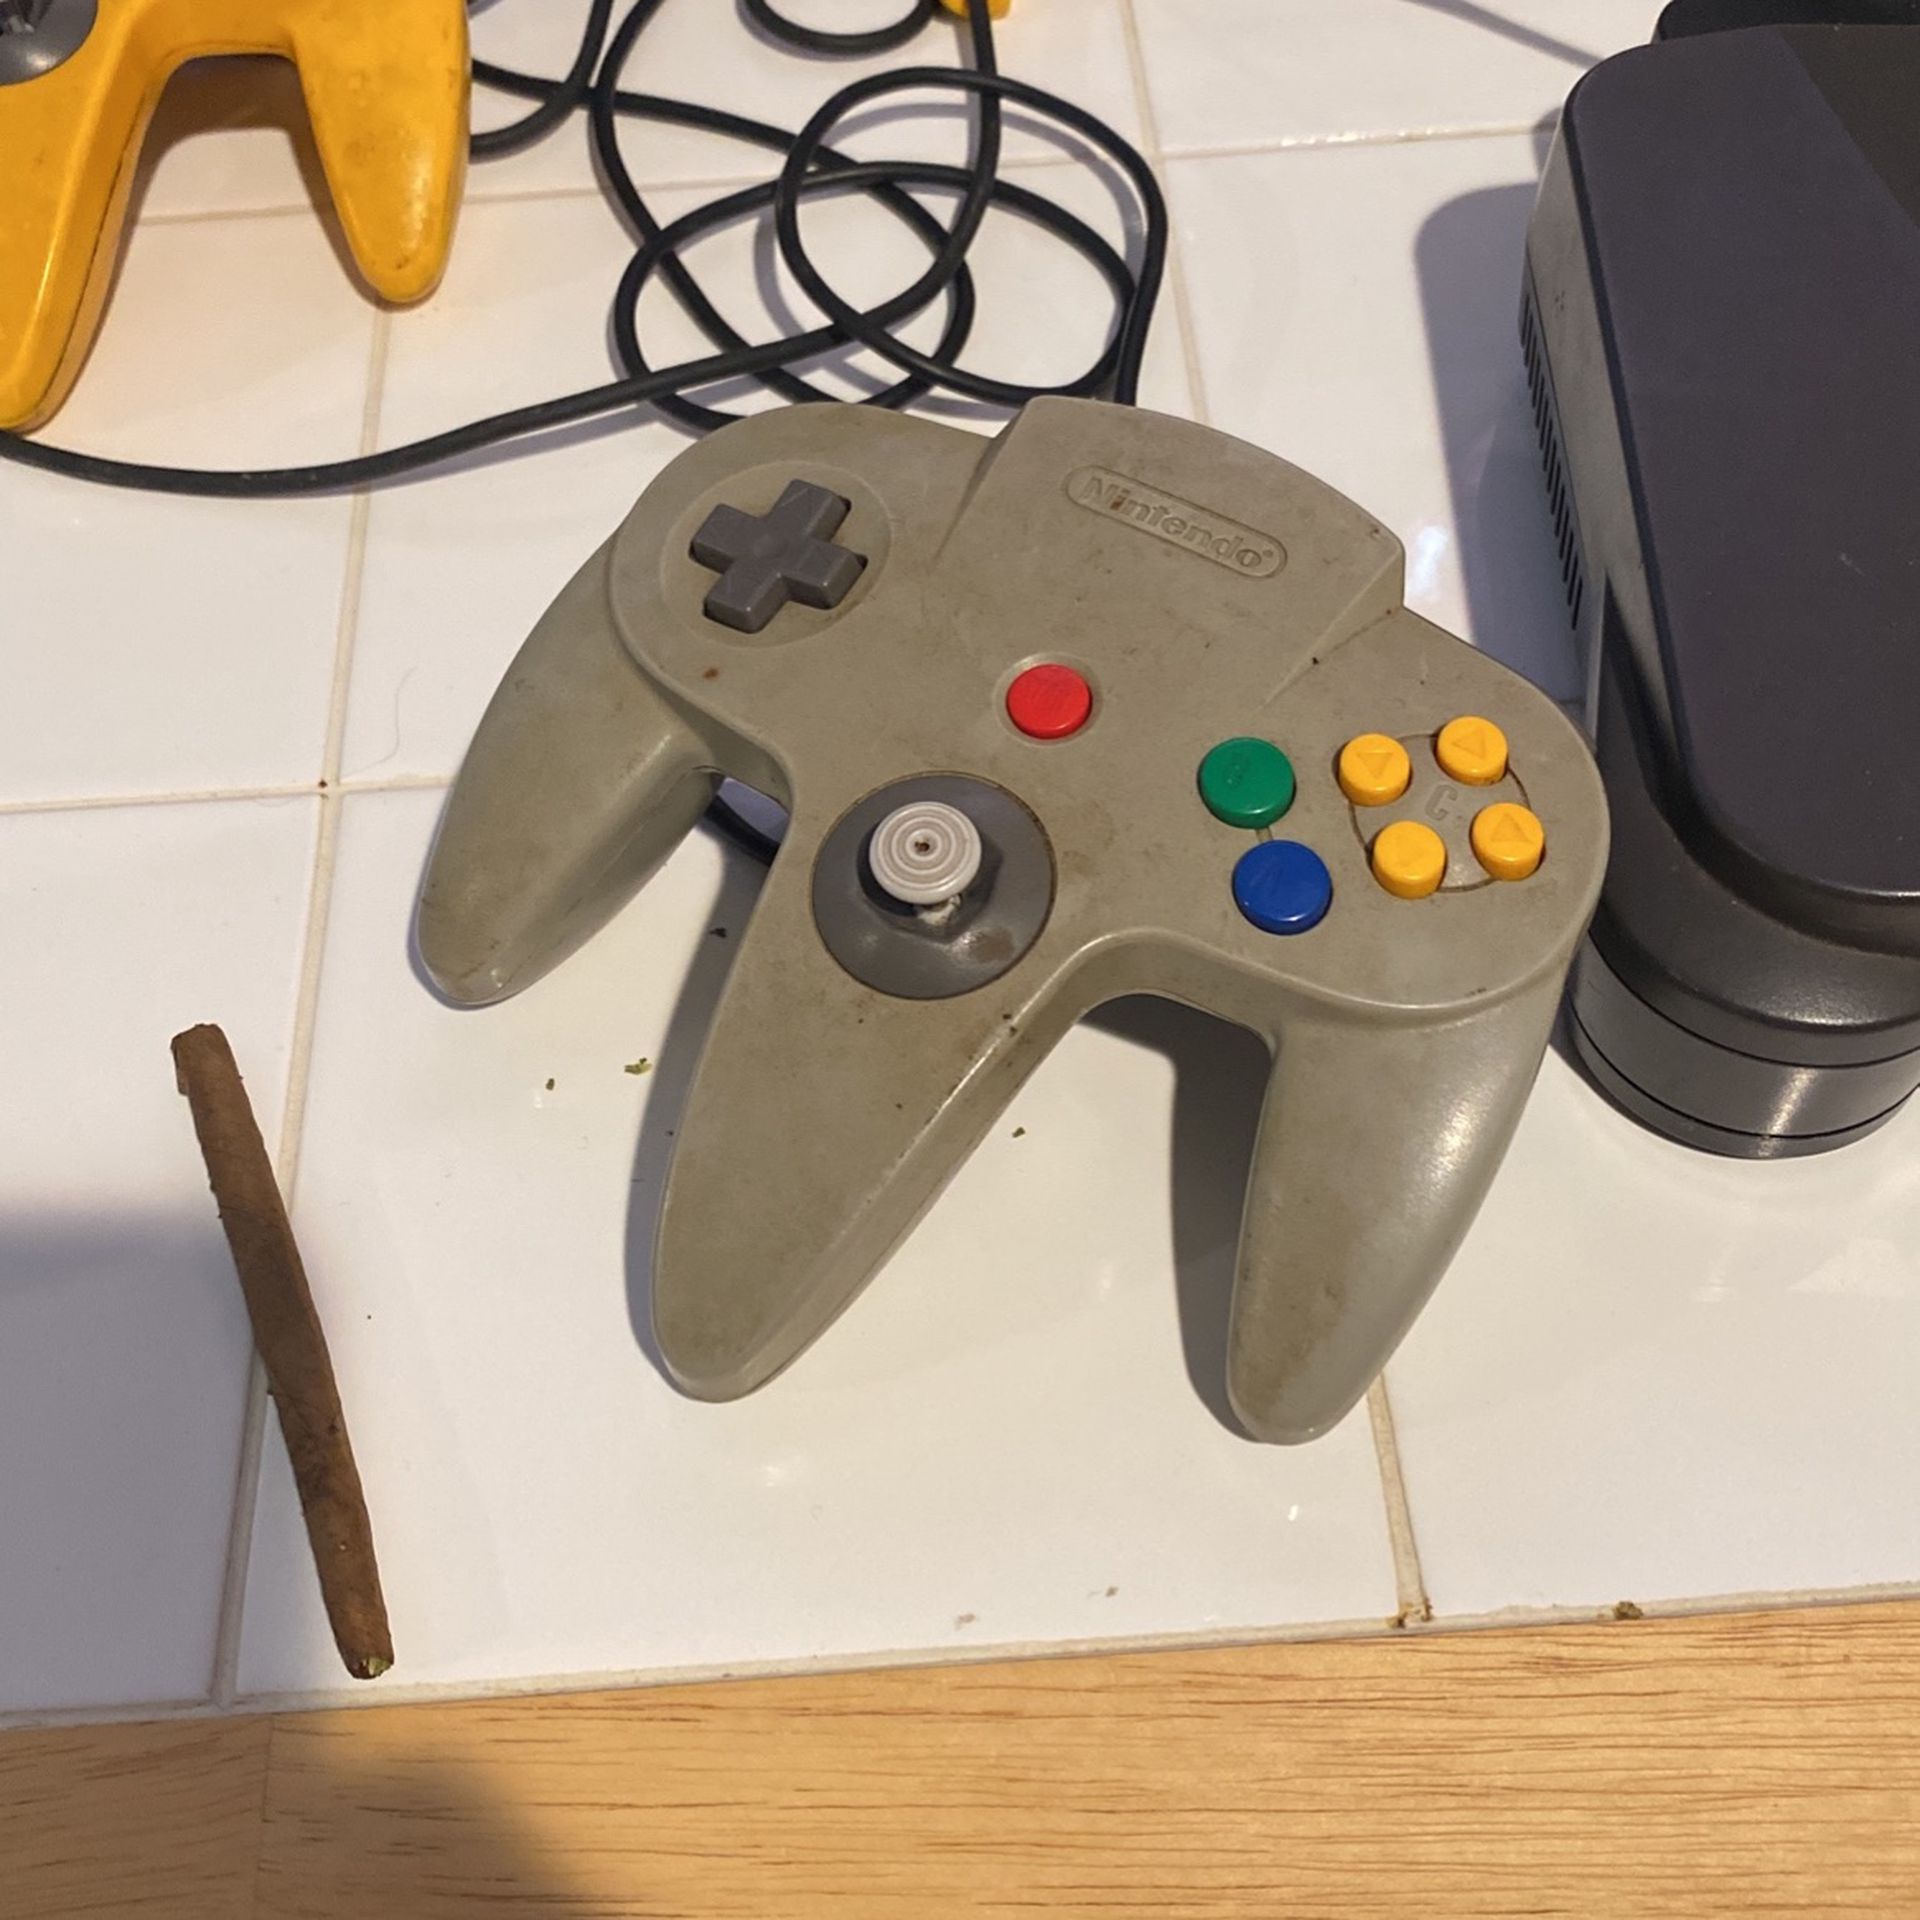 Nintendo 64 Original